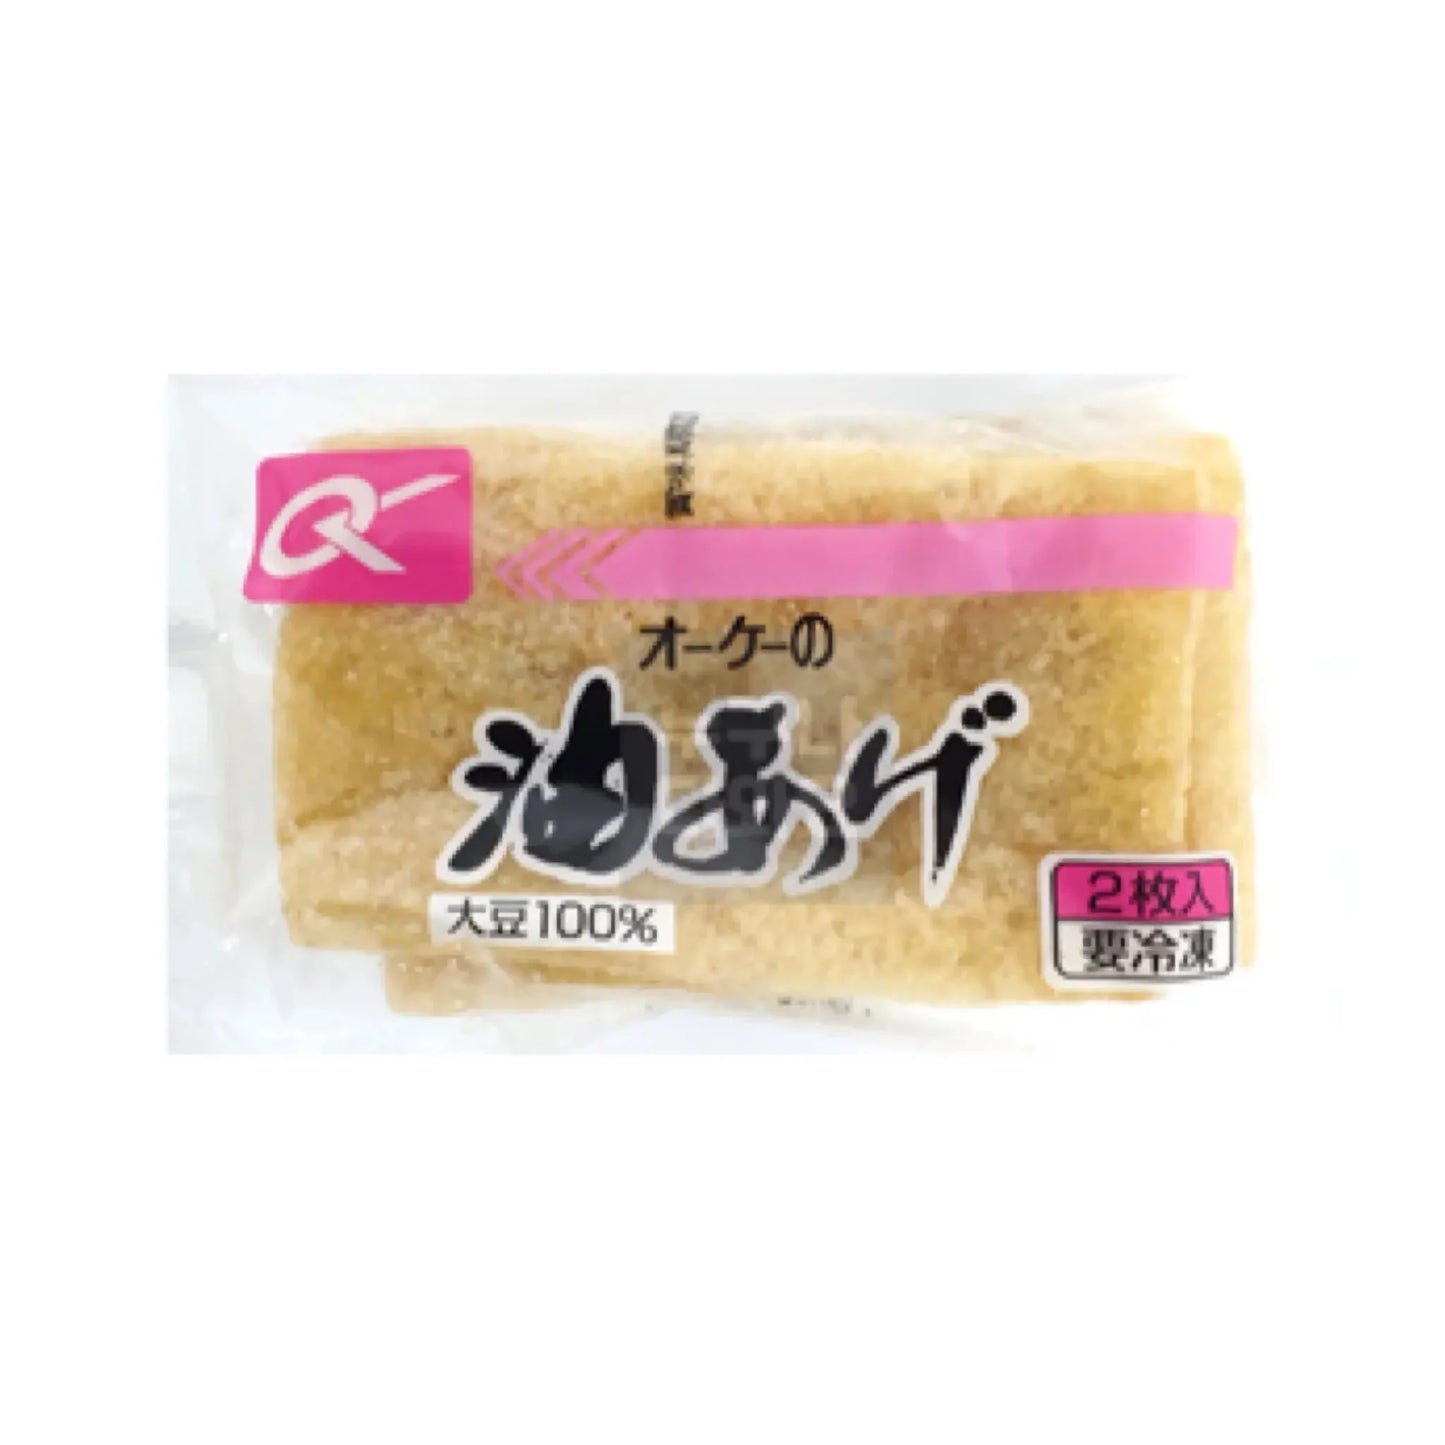 Aburaage 2pc- Tofu Frito 40g Loja Japonesa Goyo-Ya 